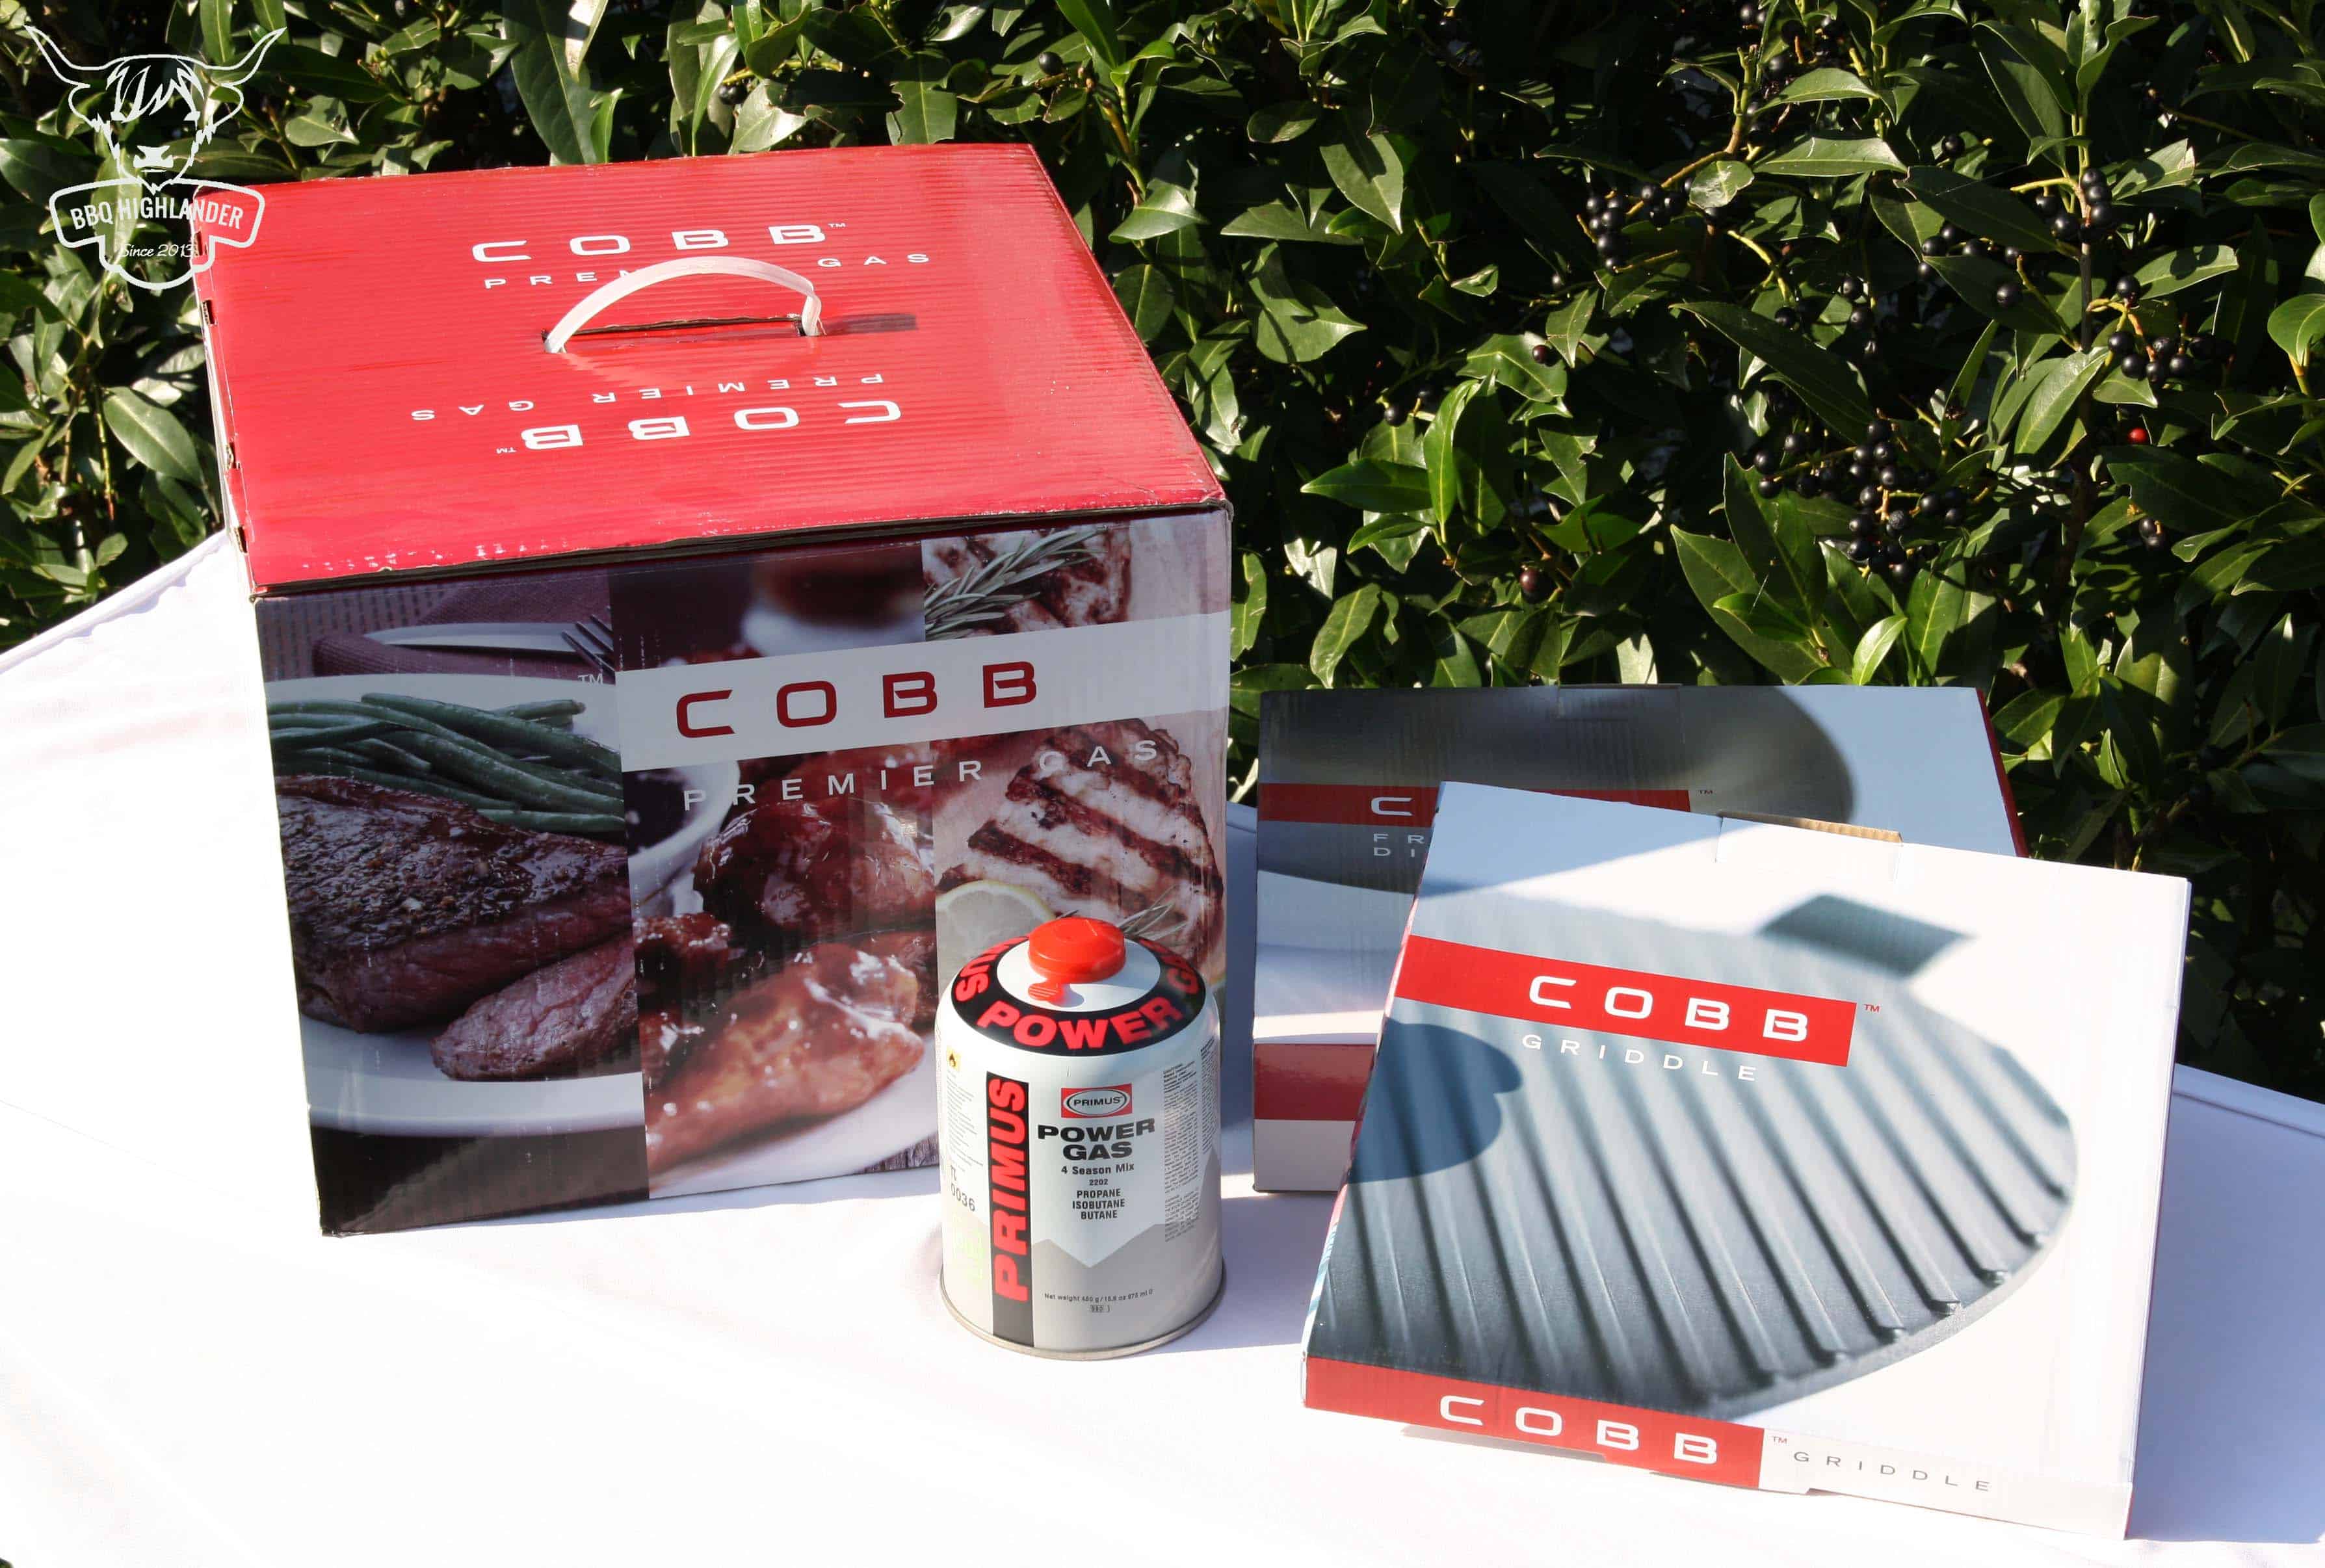 Der Cobb Premier Gas Grill wird vorgestellt